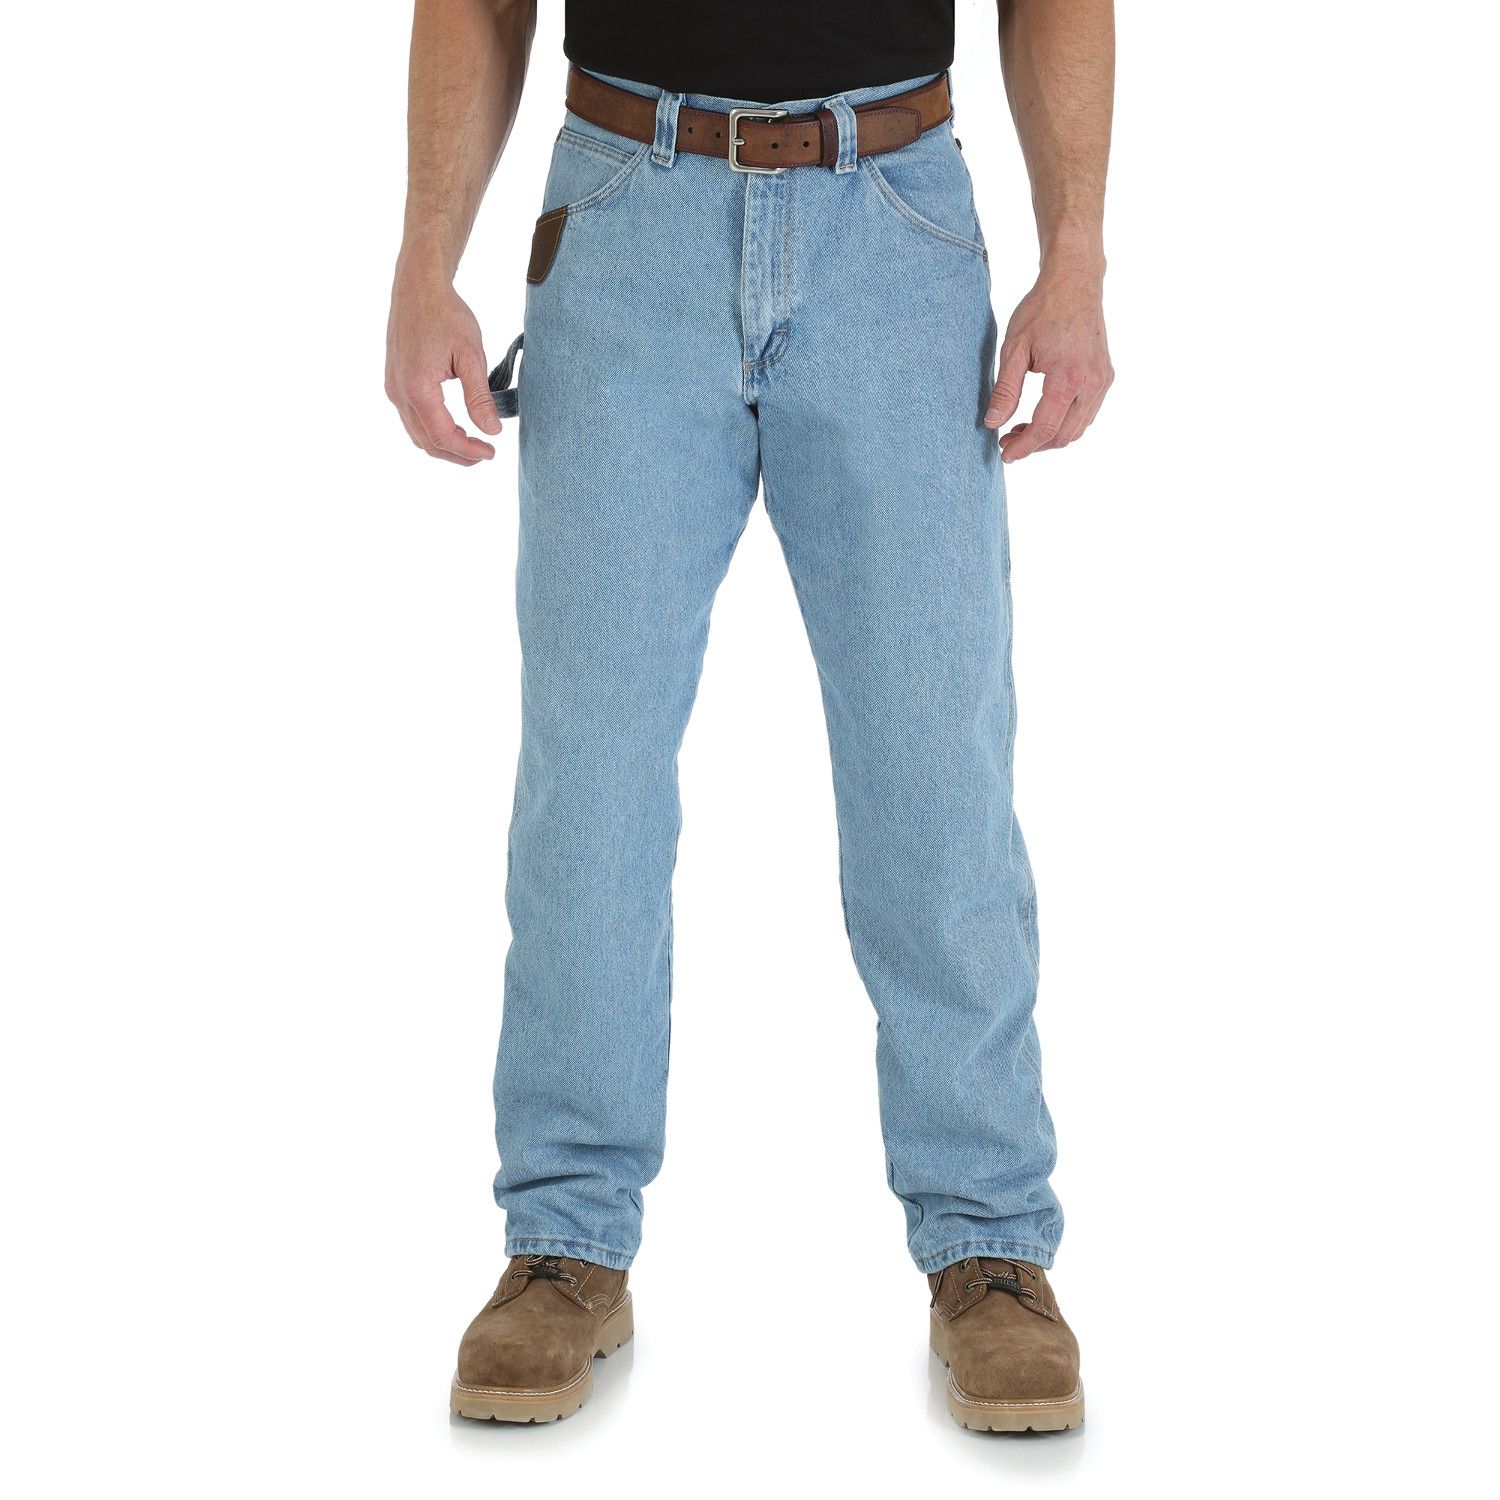 wrangler carpenter jeans near me